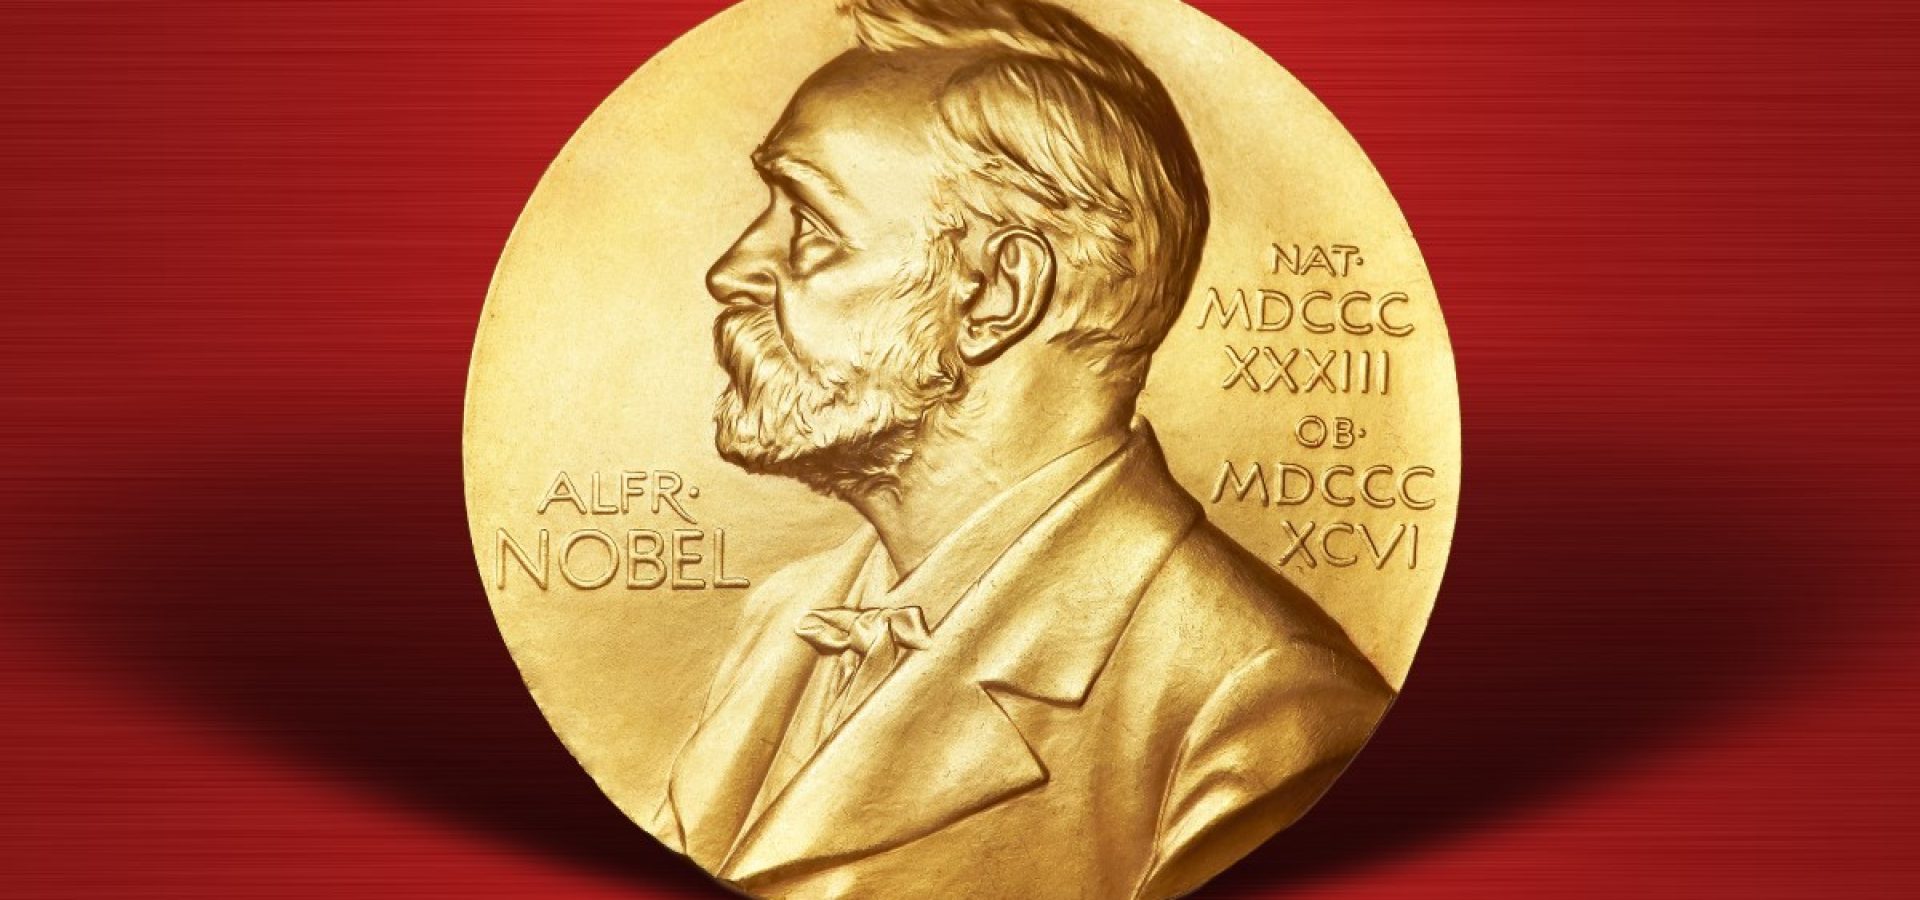 Nobel Prize in 2019